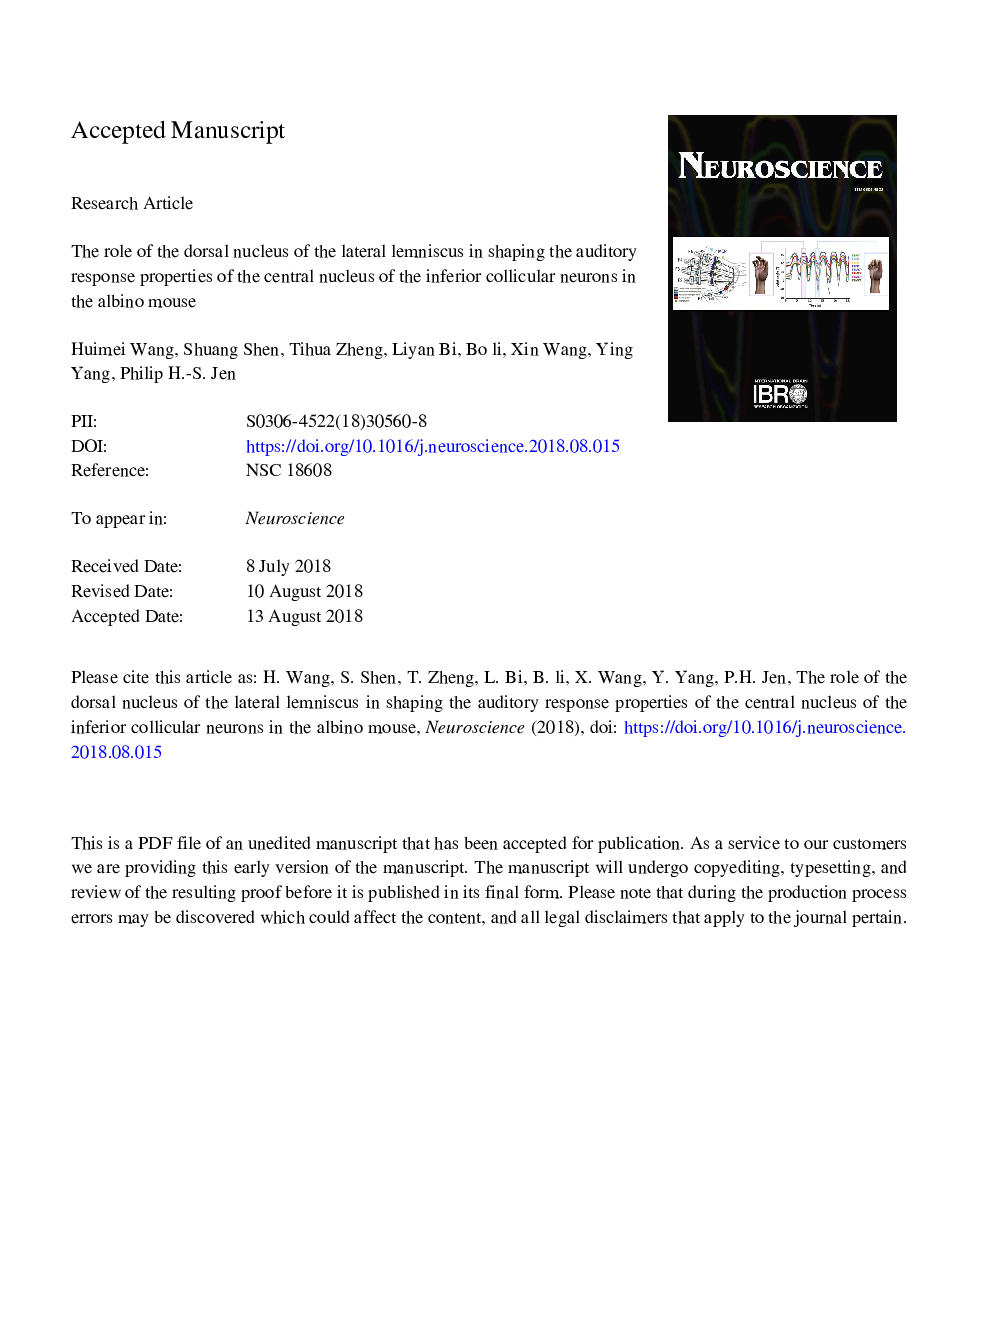 نقش هسته پشتی لننوسوس جانبی در شکل دادن ویژگی های واکنش شنیداری هسته مرکزی نورون های کولیکولی پایین در موش آلبینیو